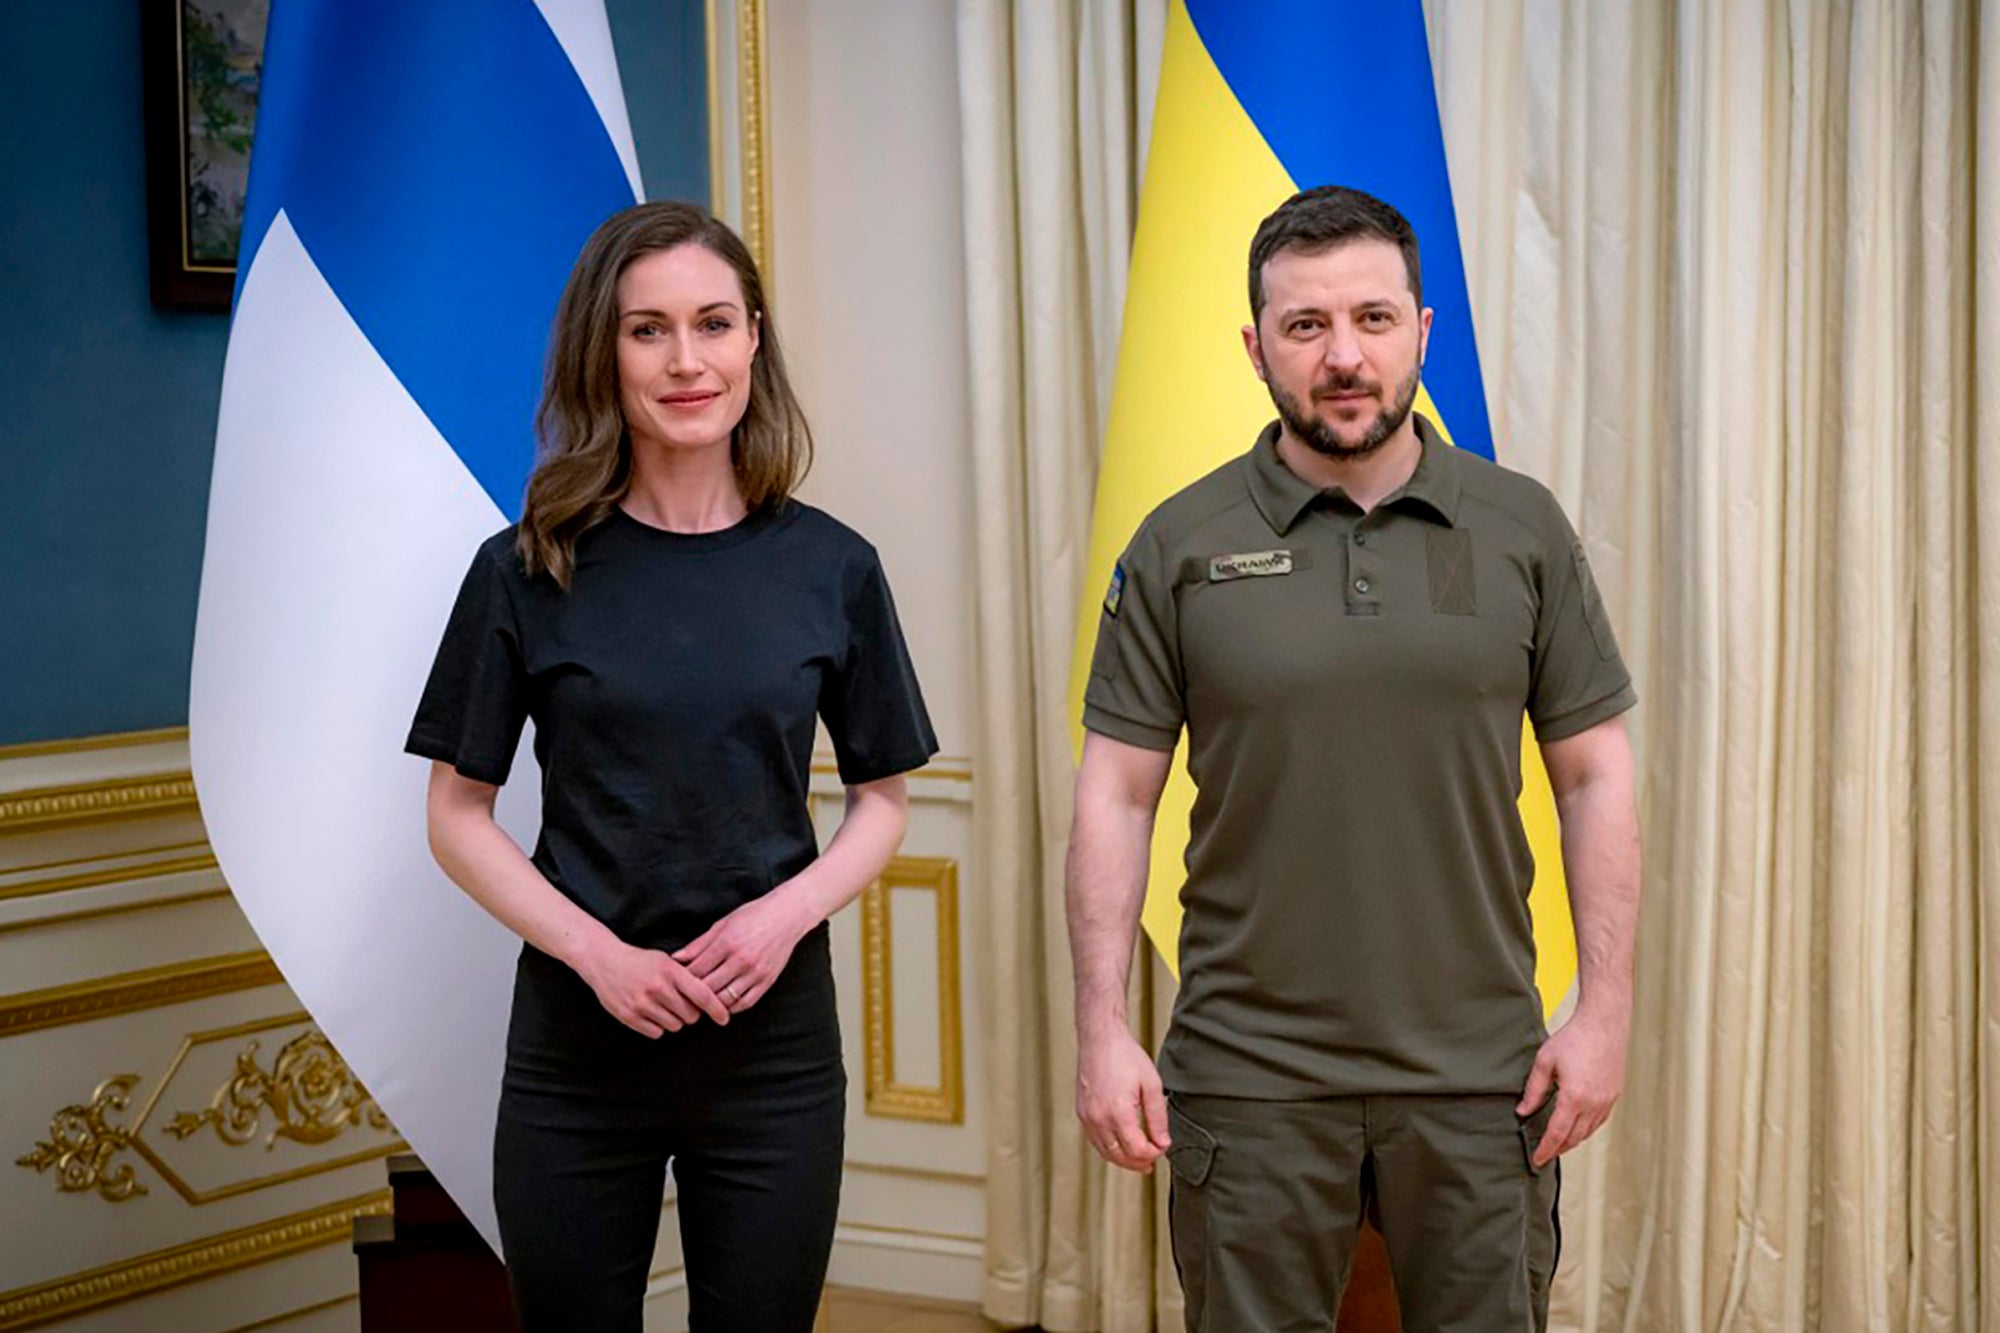 Sanna Marin with Ukrainian president Volodymyr Zelensky